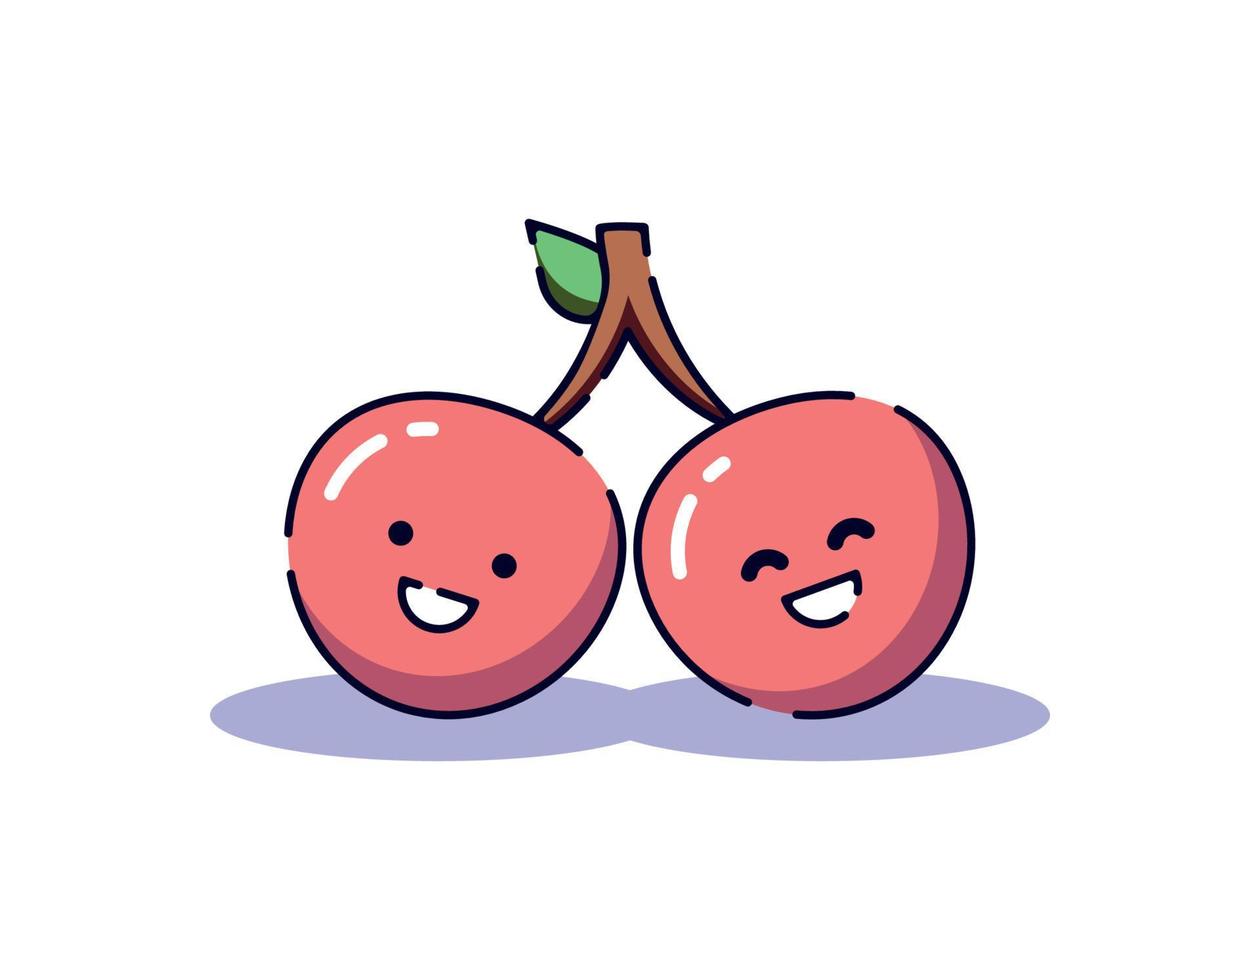 illustrazione vettoriale isolata di ciliegia con un sorriso luminoso. adatto per siti web, app, libri, pubblicità ecc